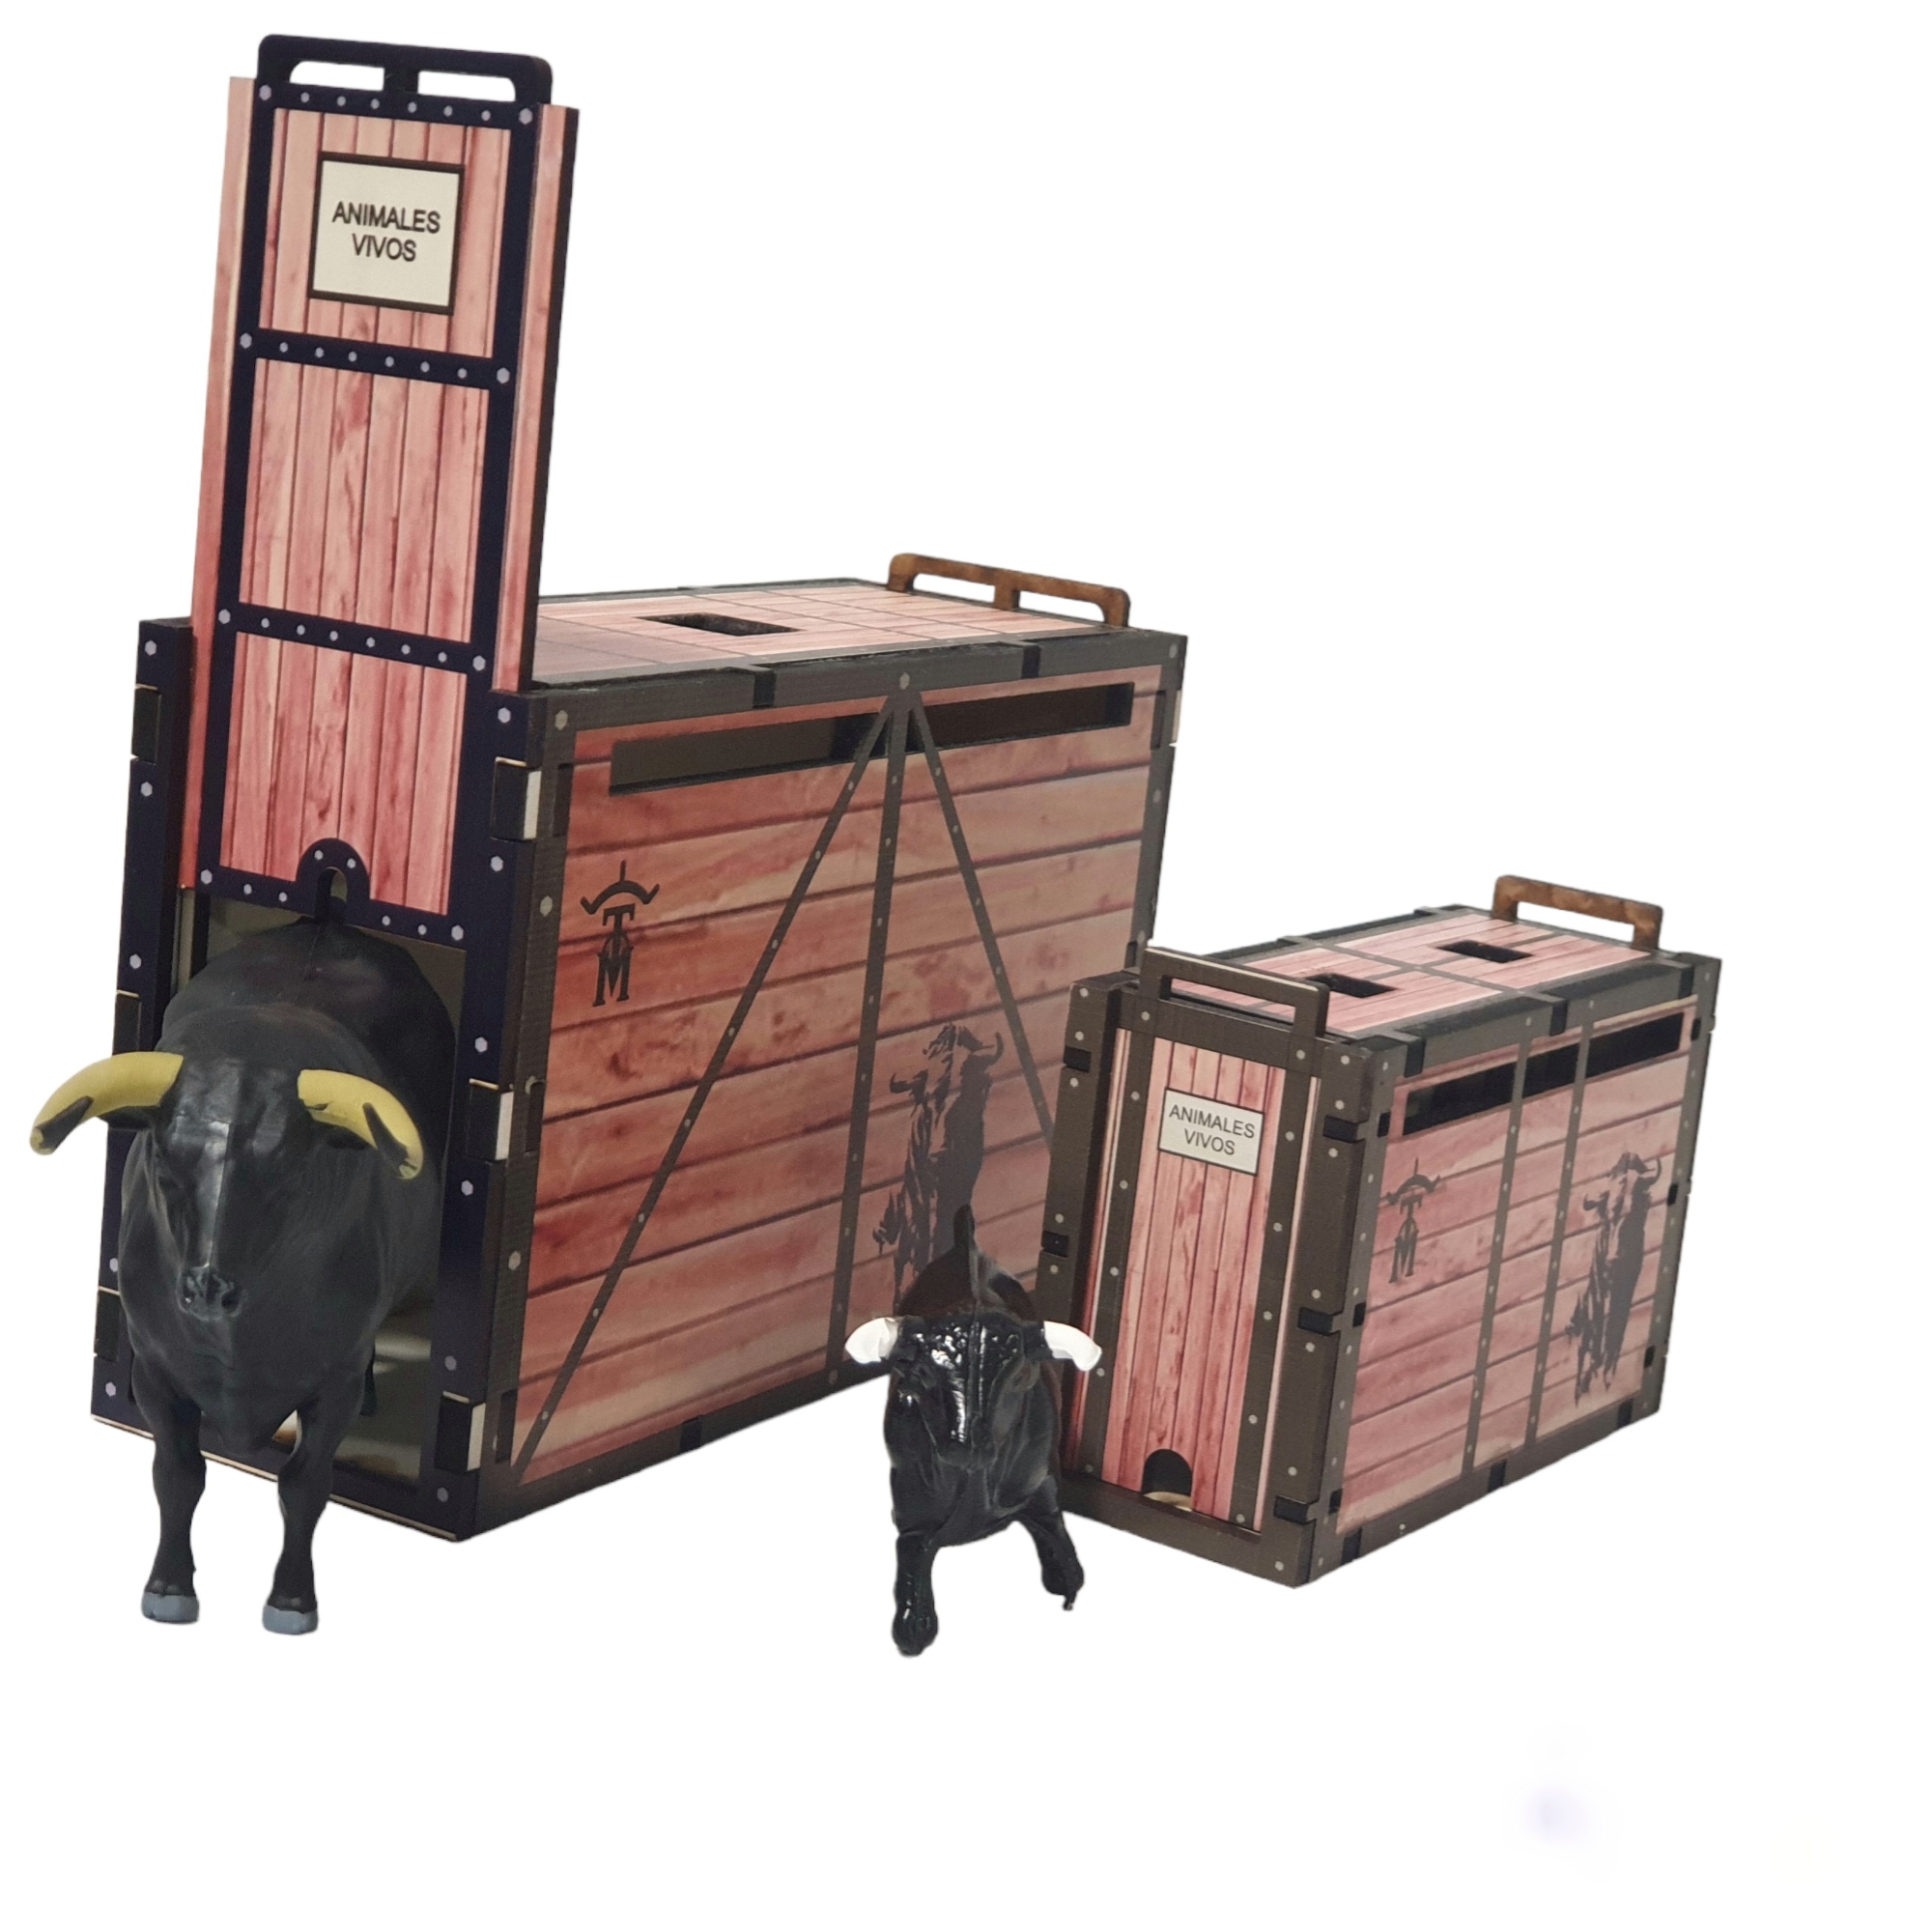 Toro Bravo de lidia negro zaino con cajon de transporte color madera mas regalo cajon o toril escala playmobil.